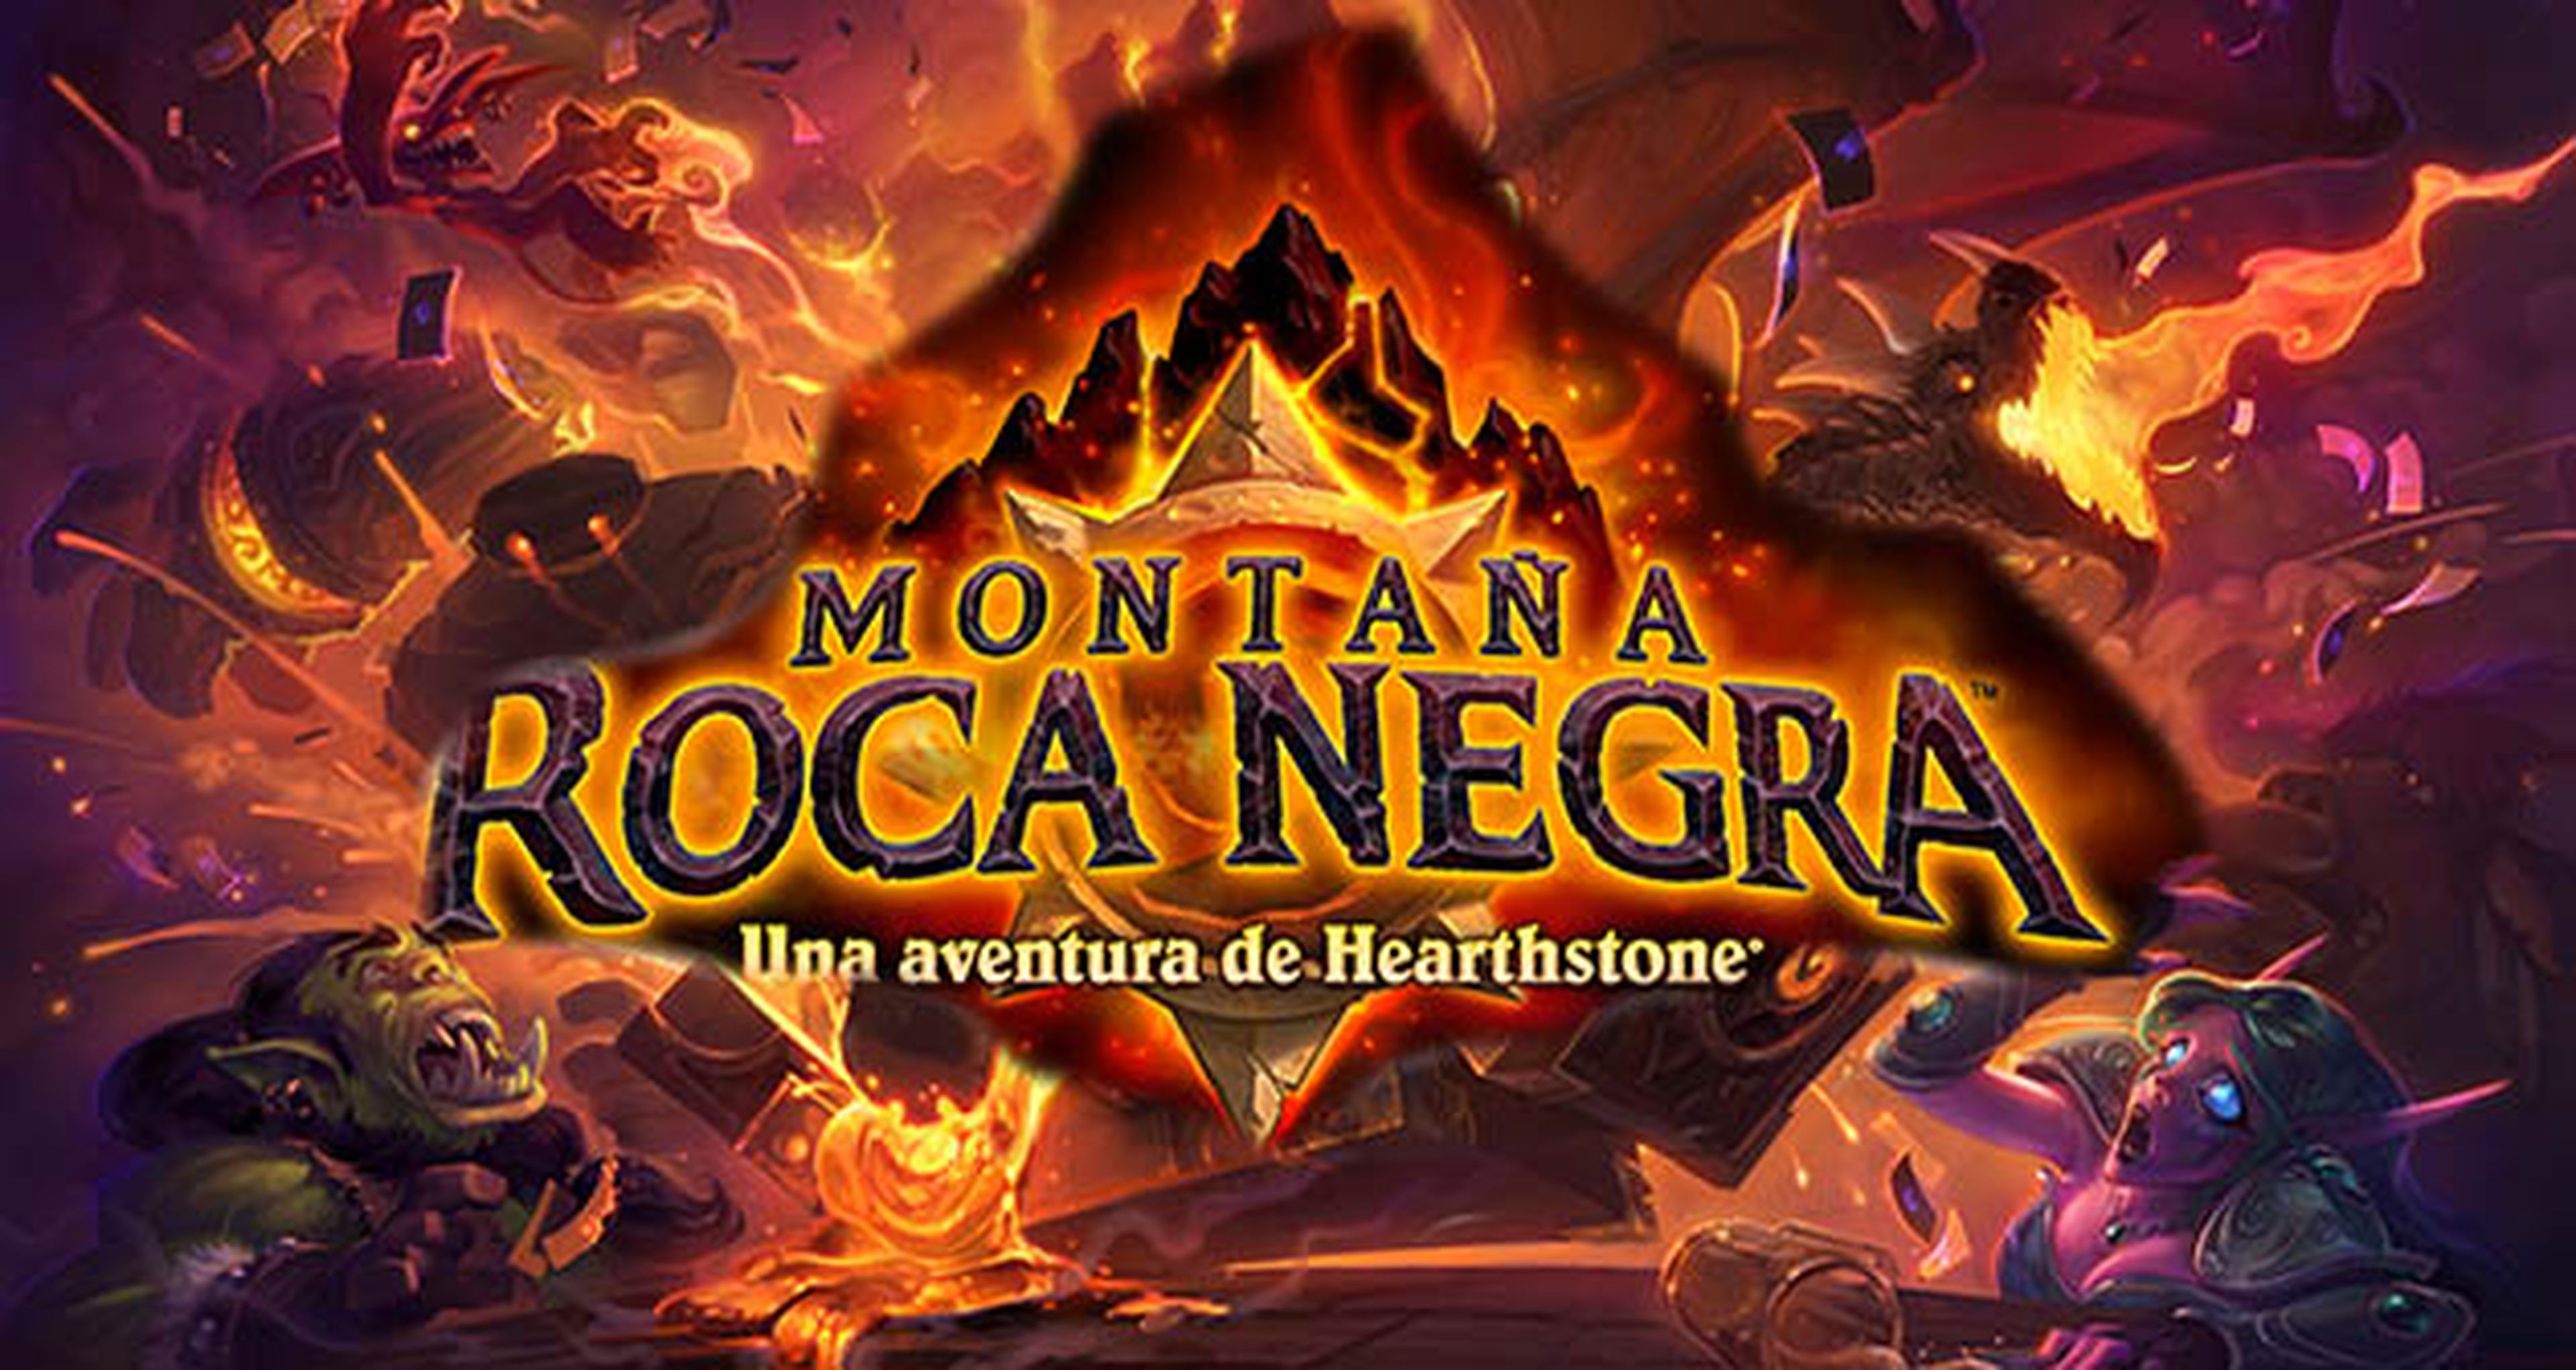 Hemos jugado a Hearthstone Heroes of Warcraft Montaña Roca Negra